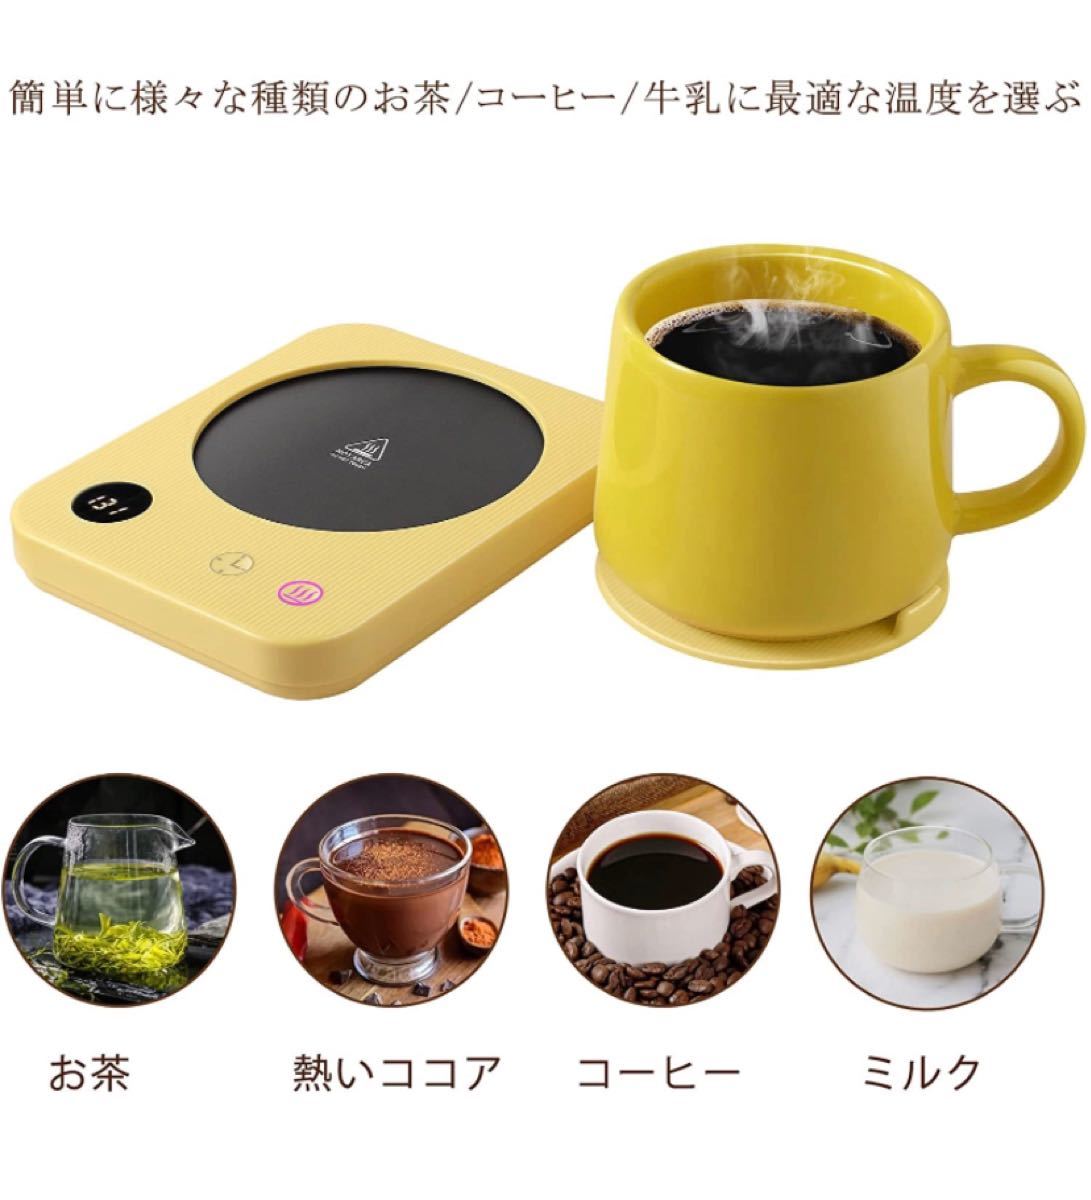 カップウォーマー、シリコンカップ蓋コ、3種モードコーヒーカップ保温器（黄色）